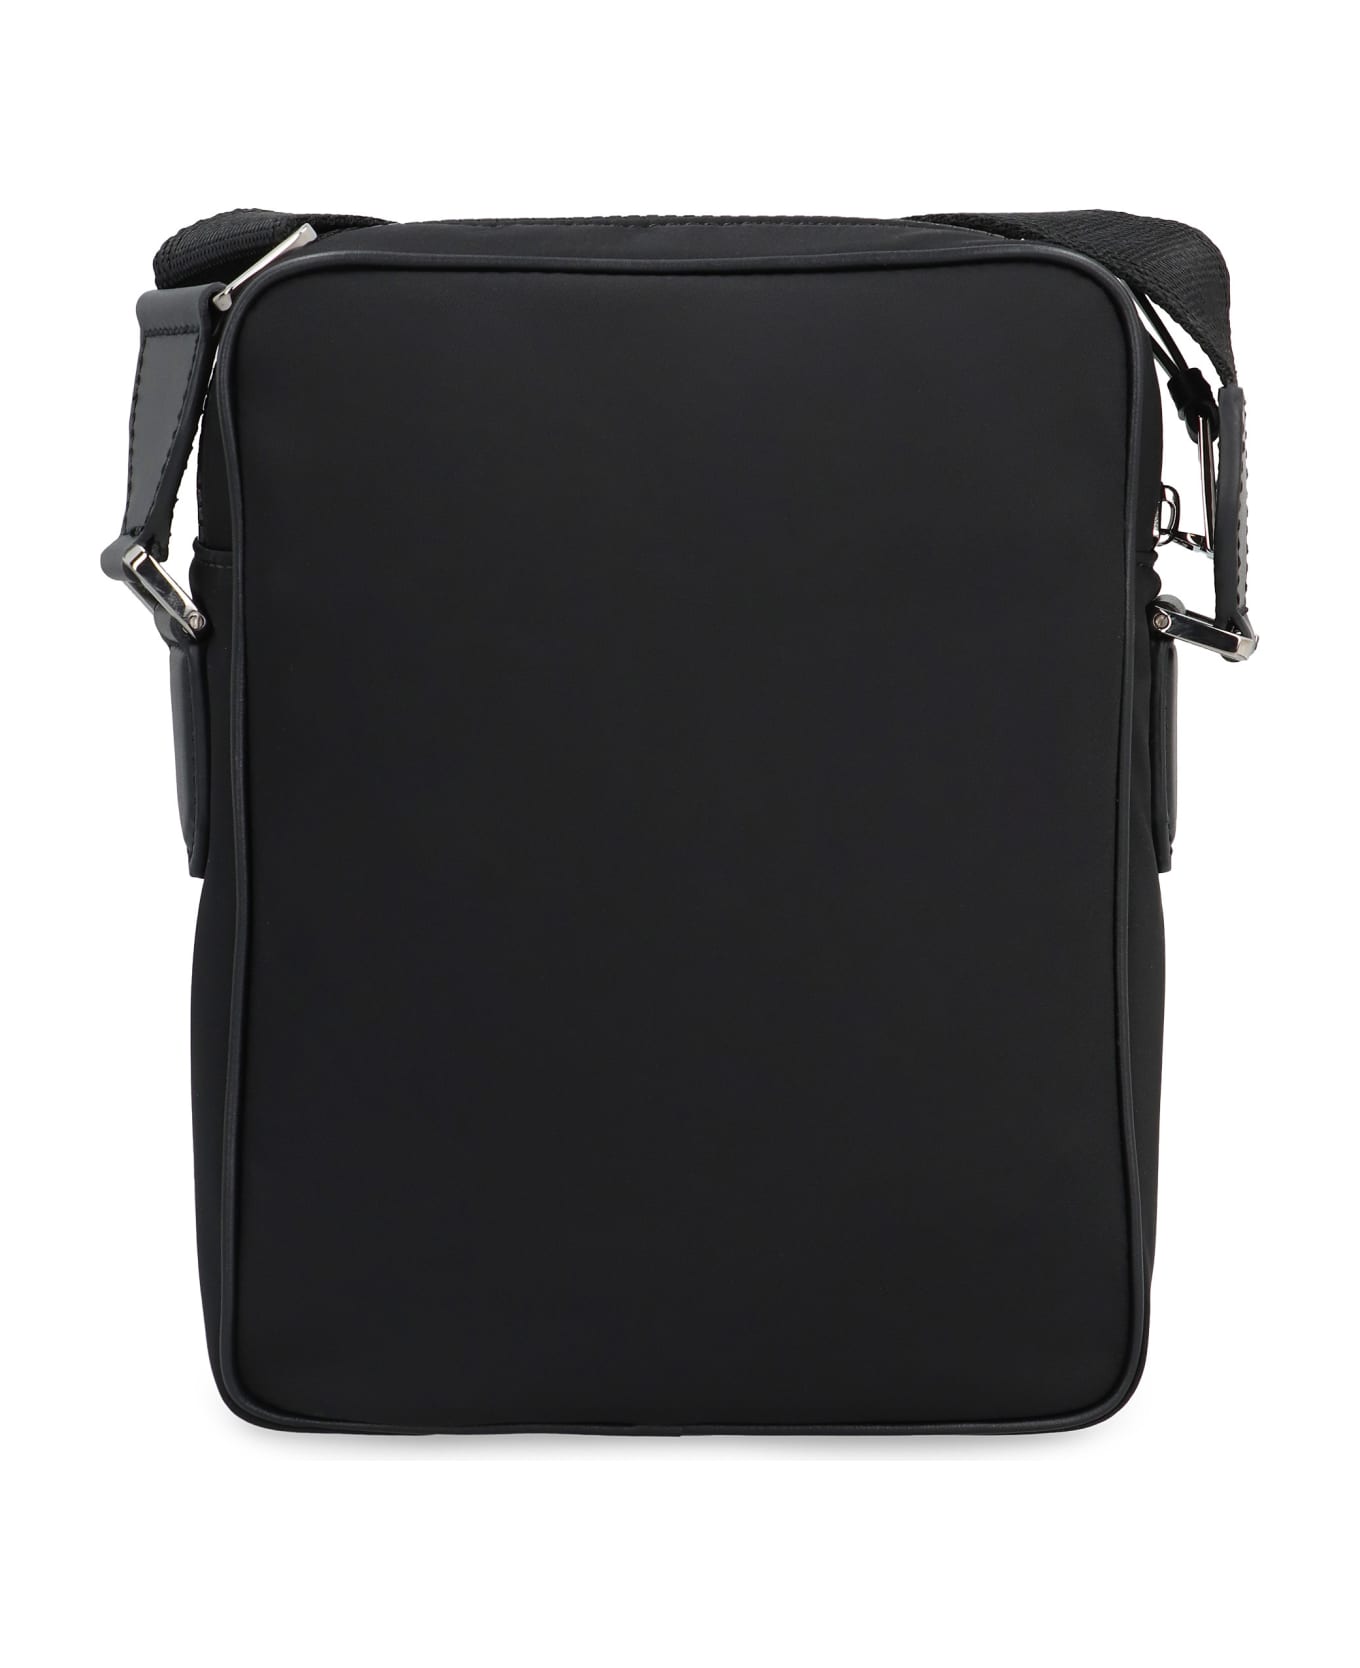 Dolce & Gabbana Nylon Messenger Bag - black